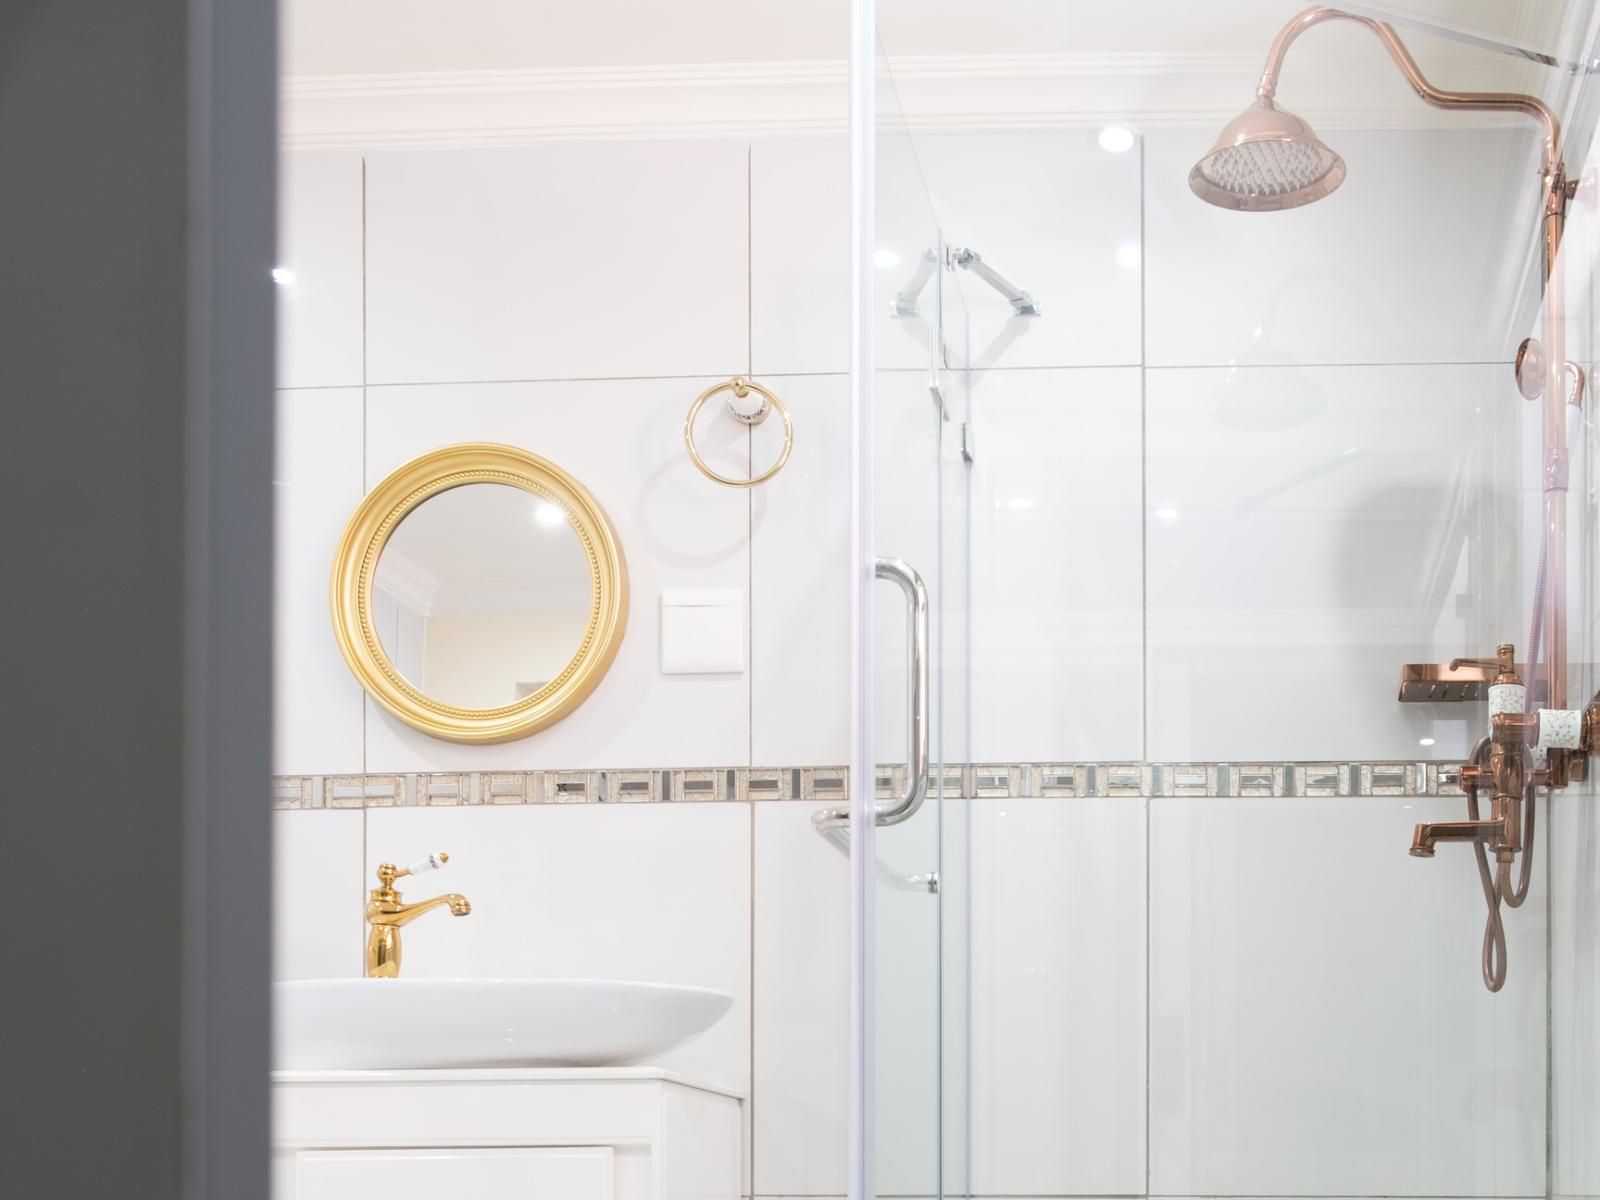 Melrose Hideout Elton Hill Johannesburg Gauteng South Africa Unsaturated, Bathroom